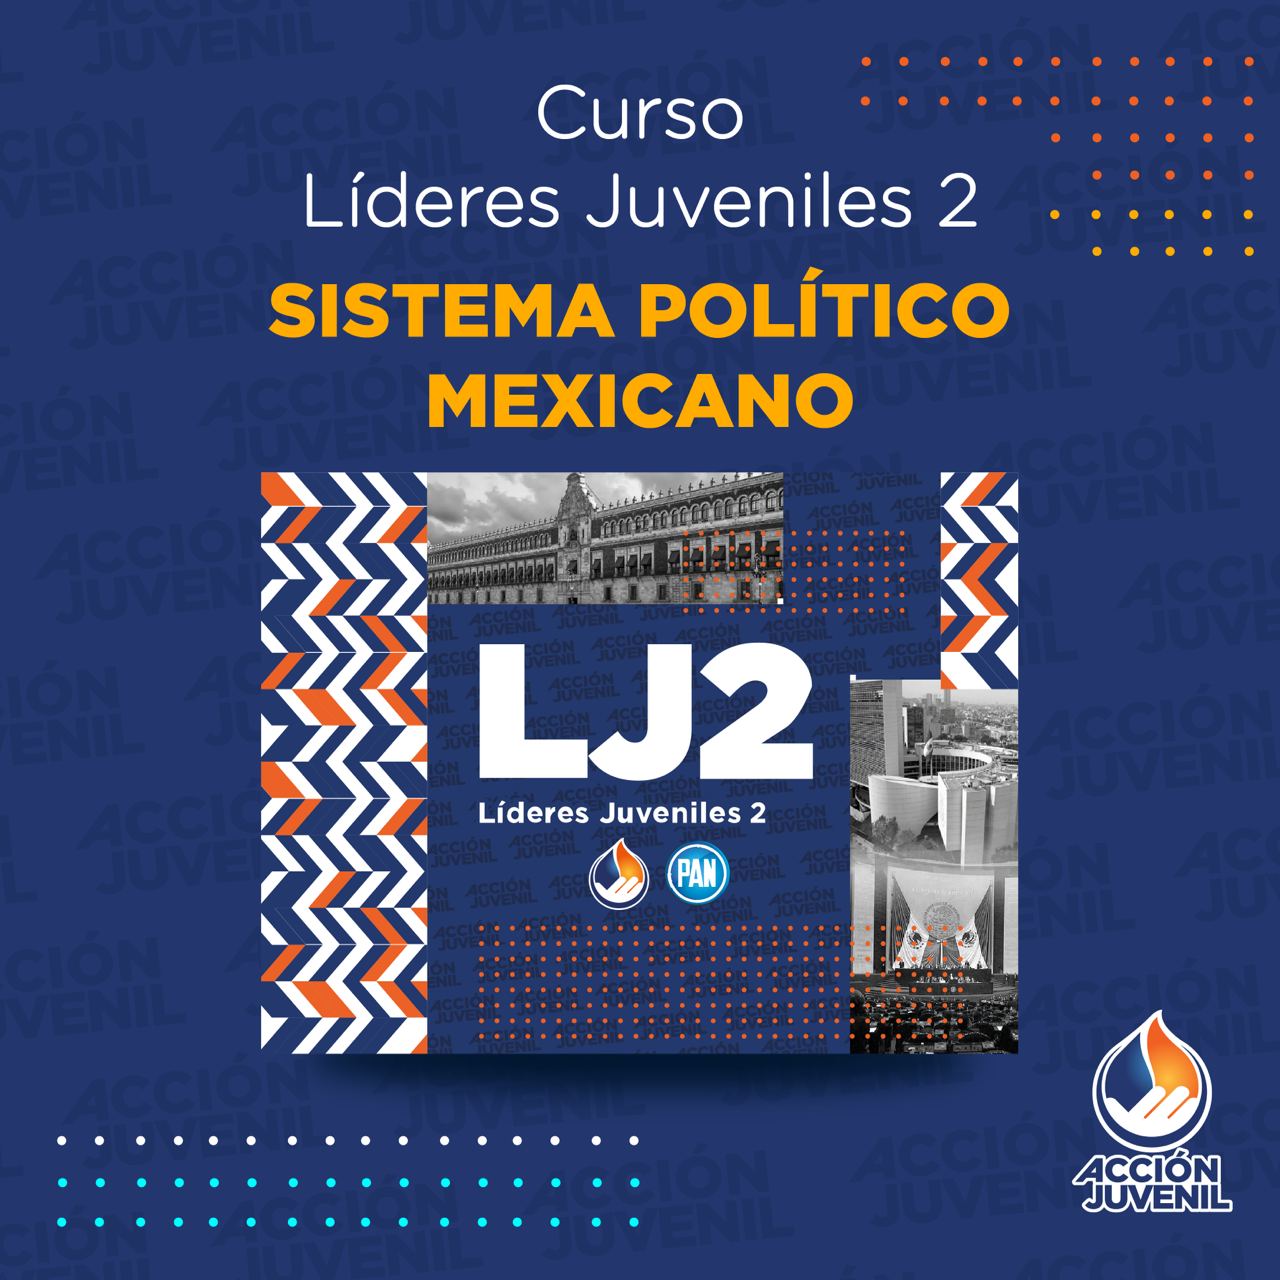 Curso Líderes Juveniles 2 Sistema Político Mexicano Salamanca, GTO 06/11/22